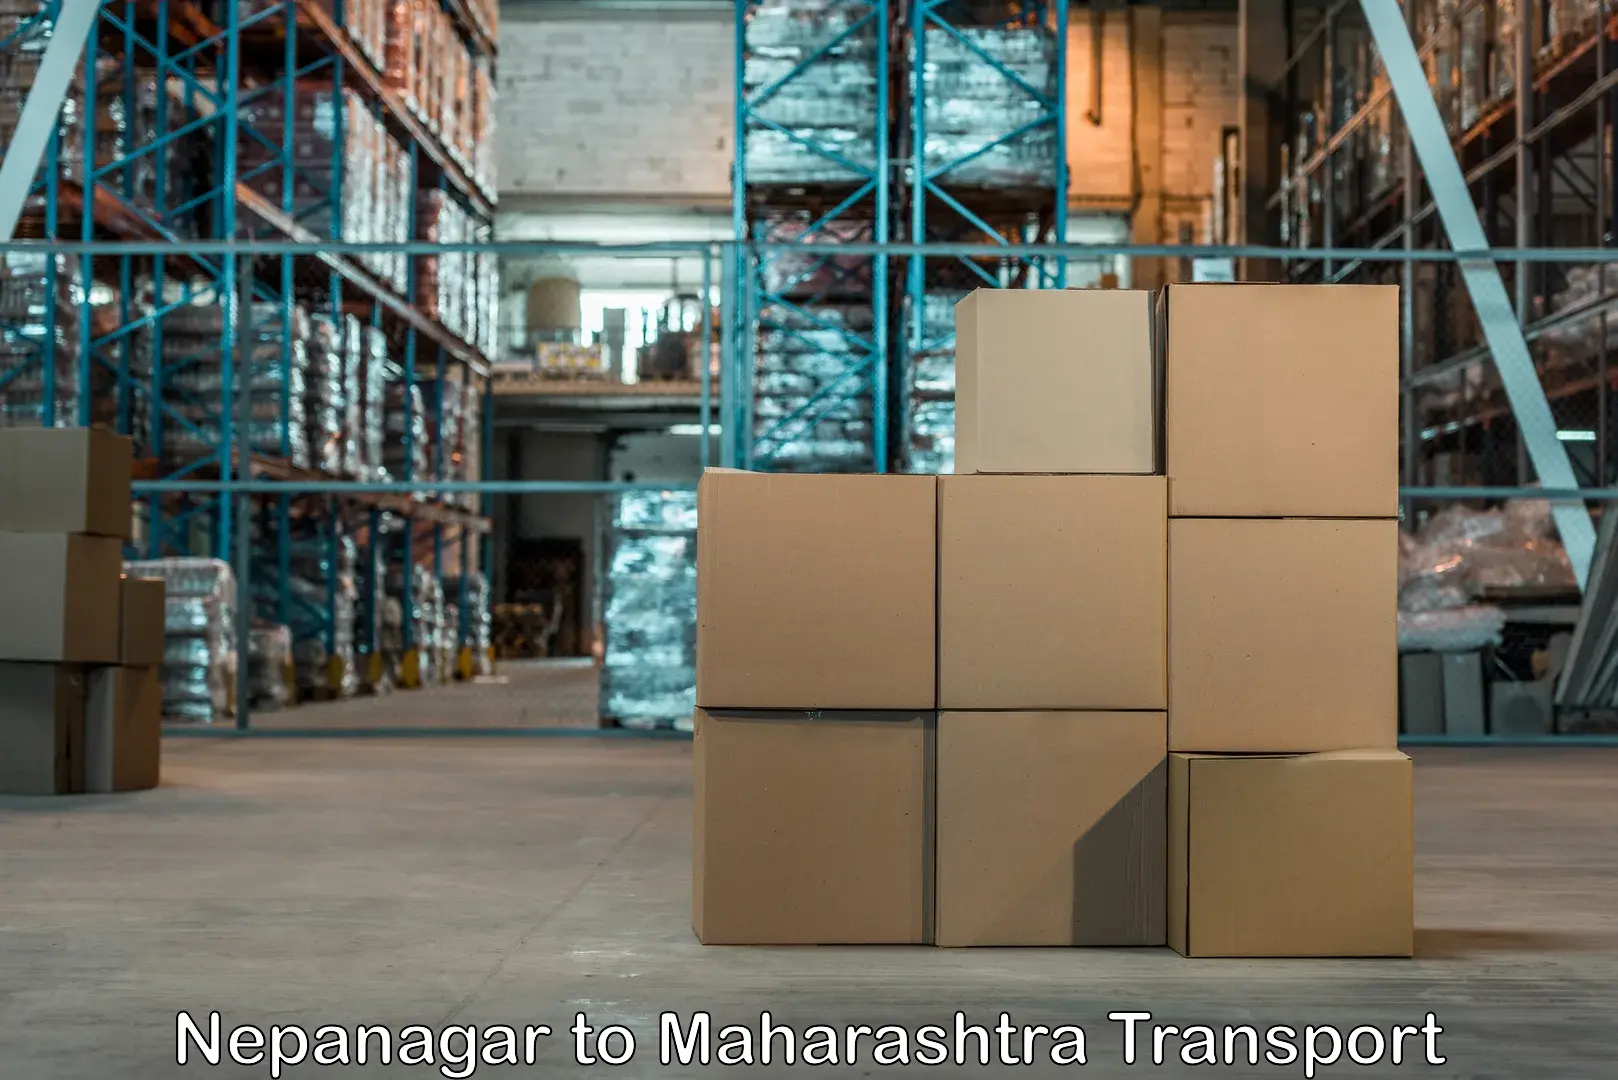 Nearby transport service Nepanagar to Maharashtra